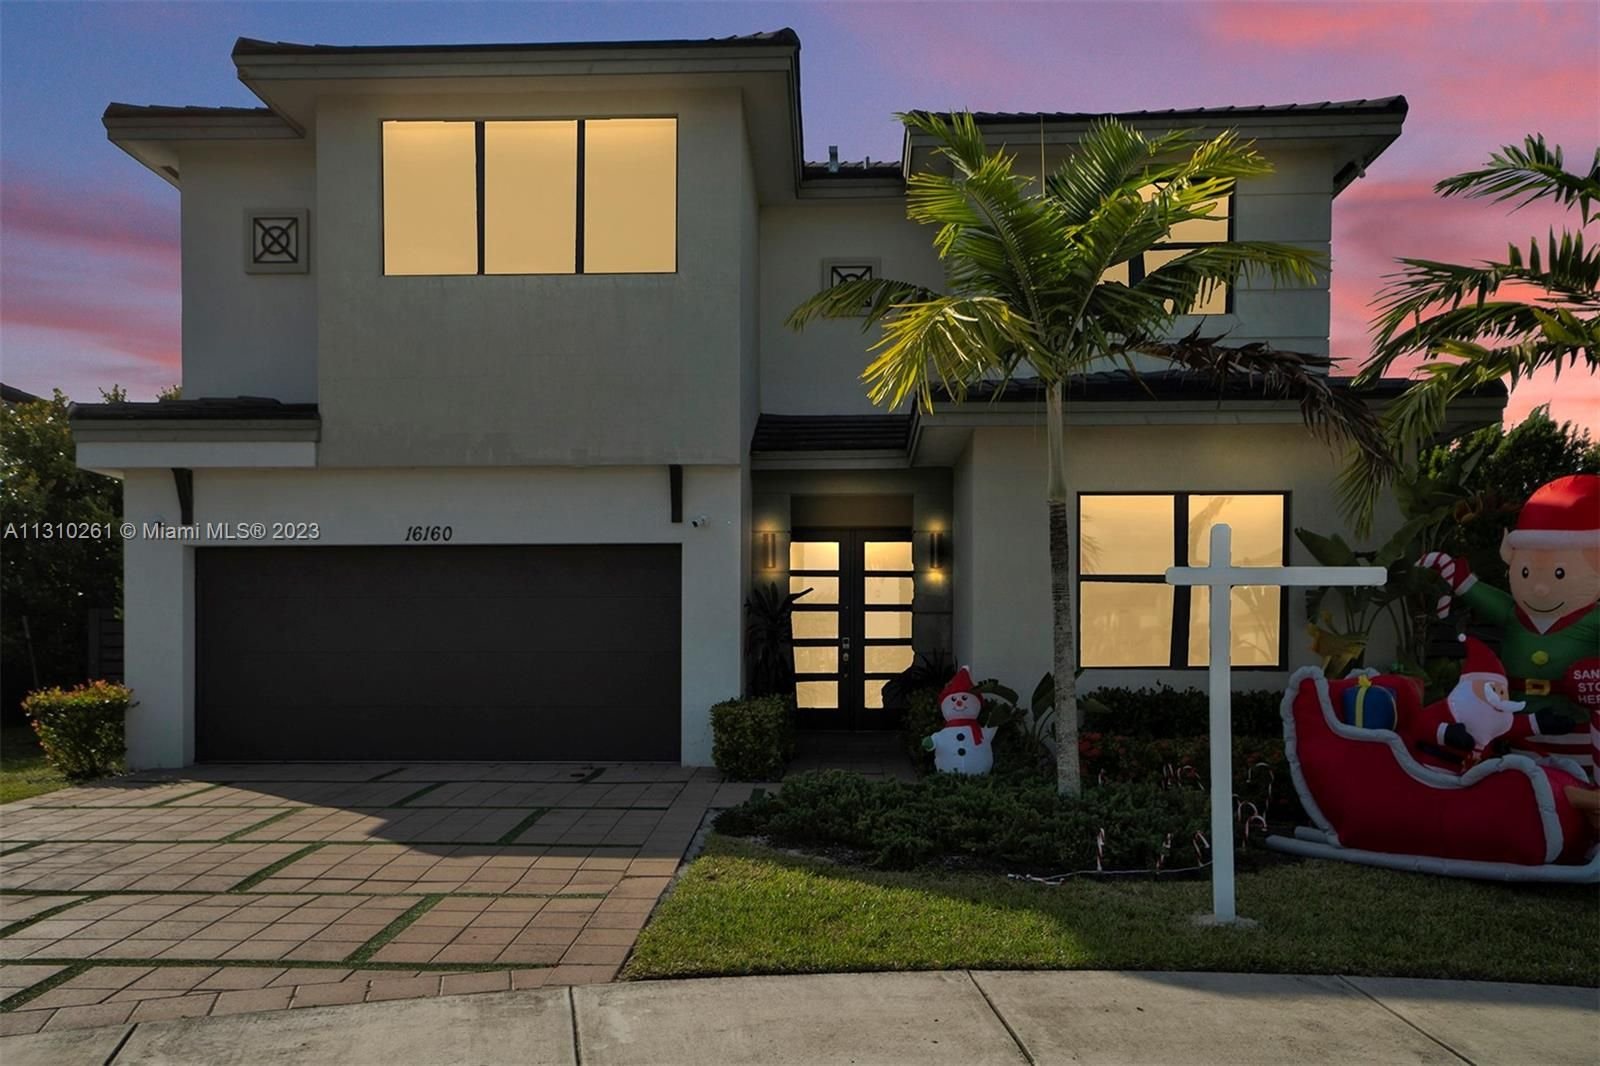 Real estate property located at 16160 91 Ct, Miami-Dade County, Satori, Miami Lakes, FL